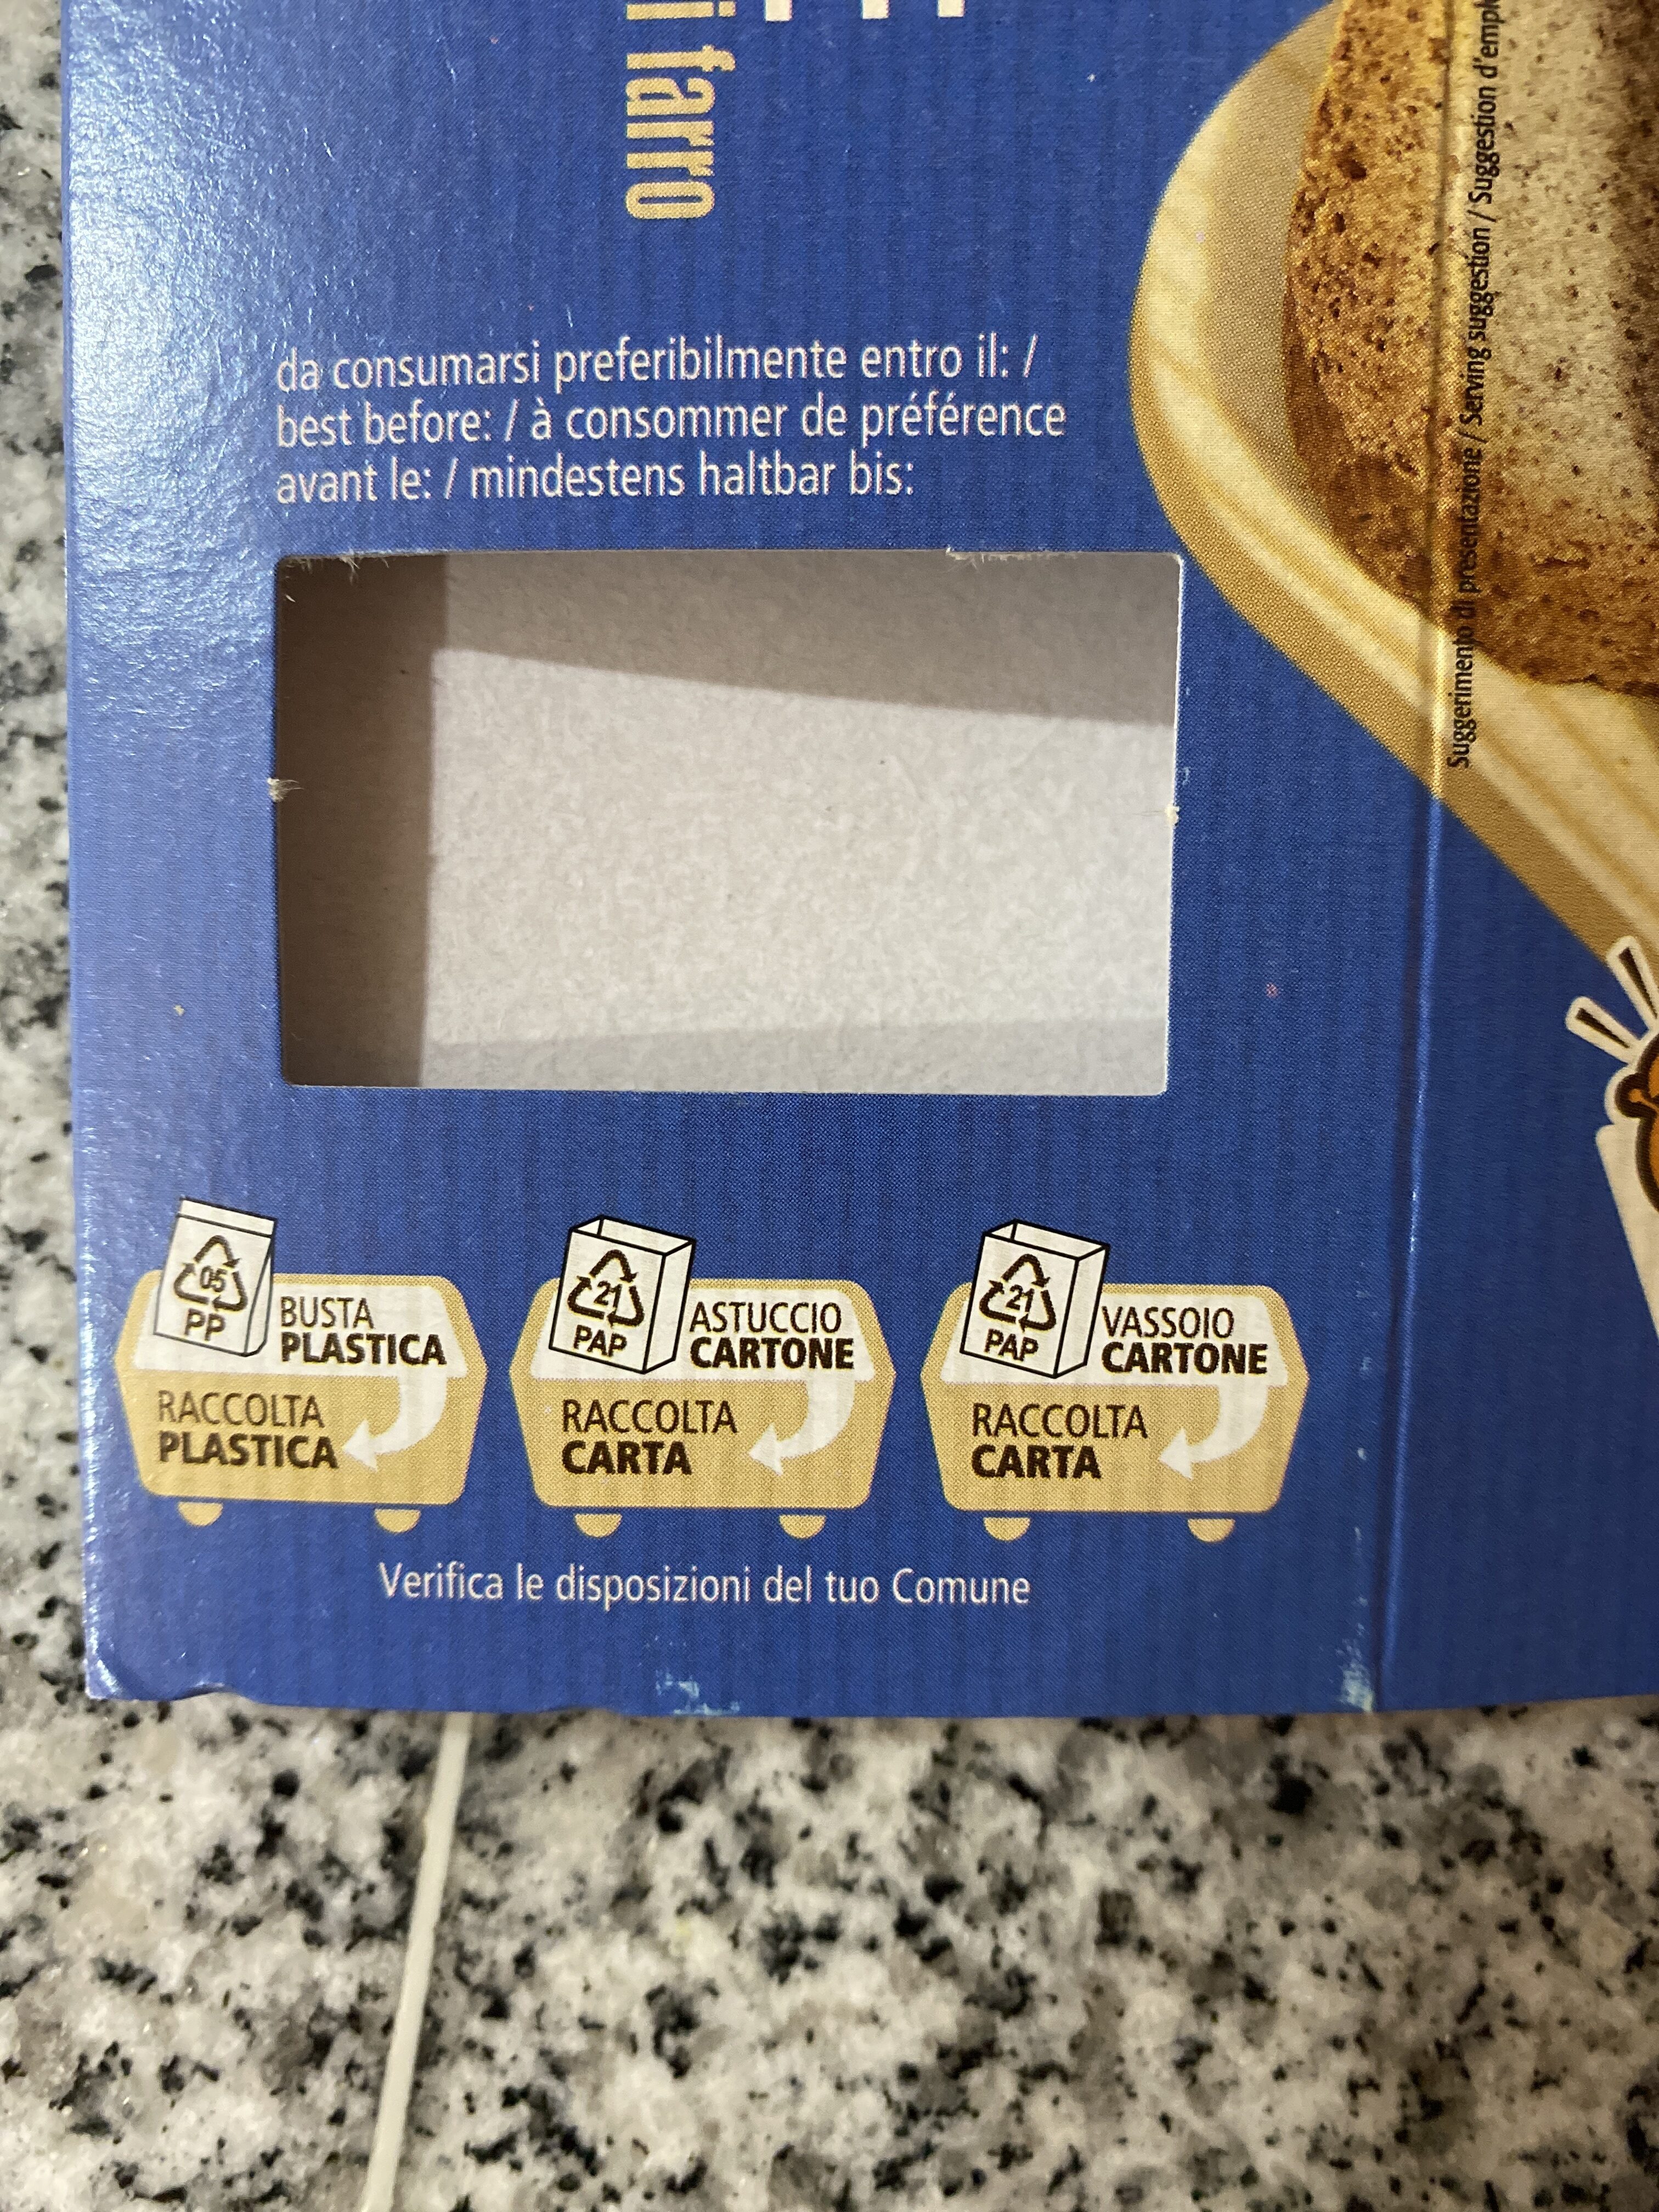 Fette biscottate - farina integrale di farro - Istruzioni per il riciclaggio e/o informazioni sull'imballaggio